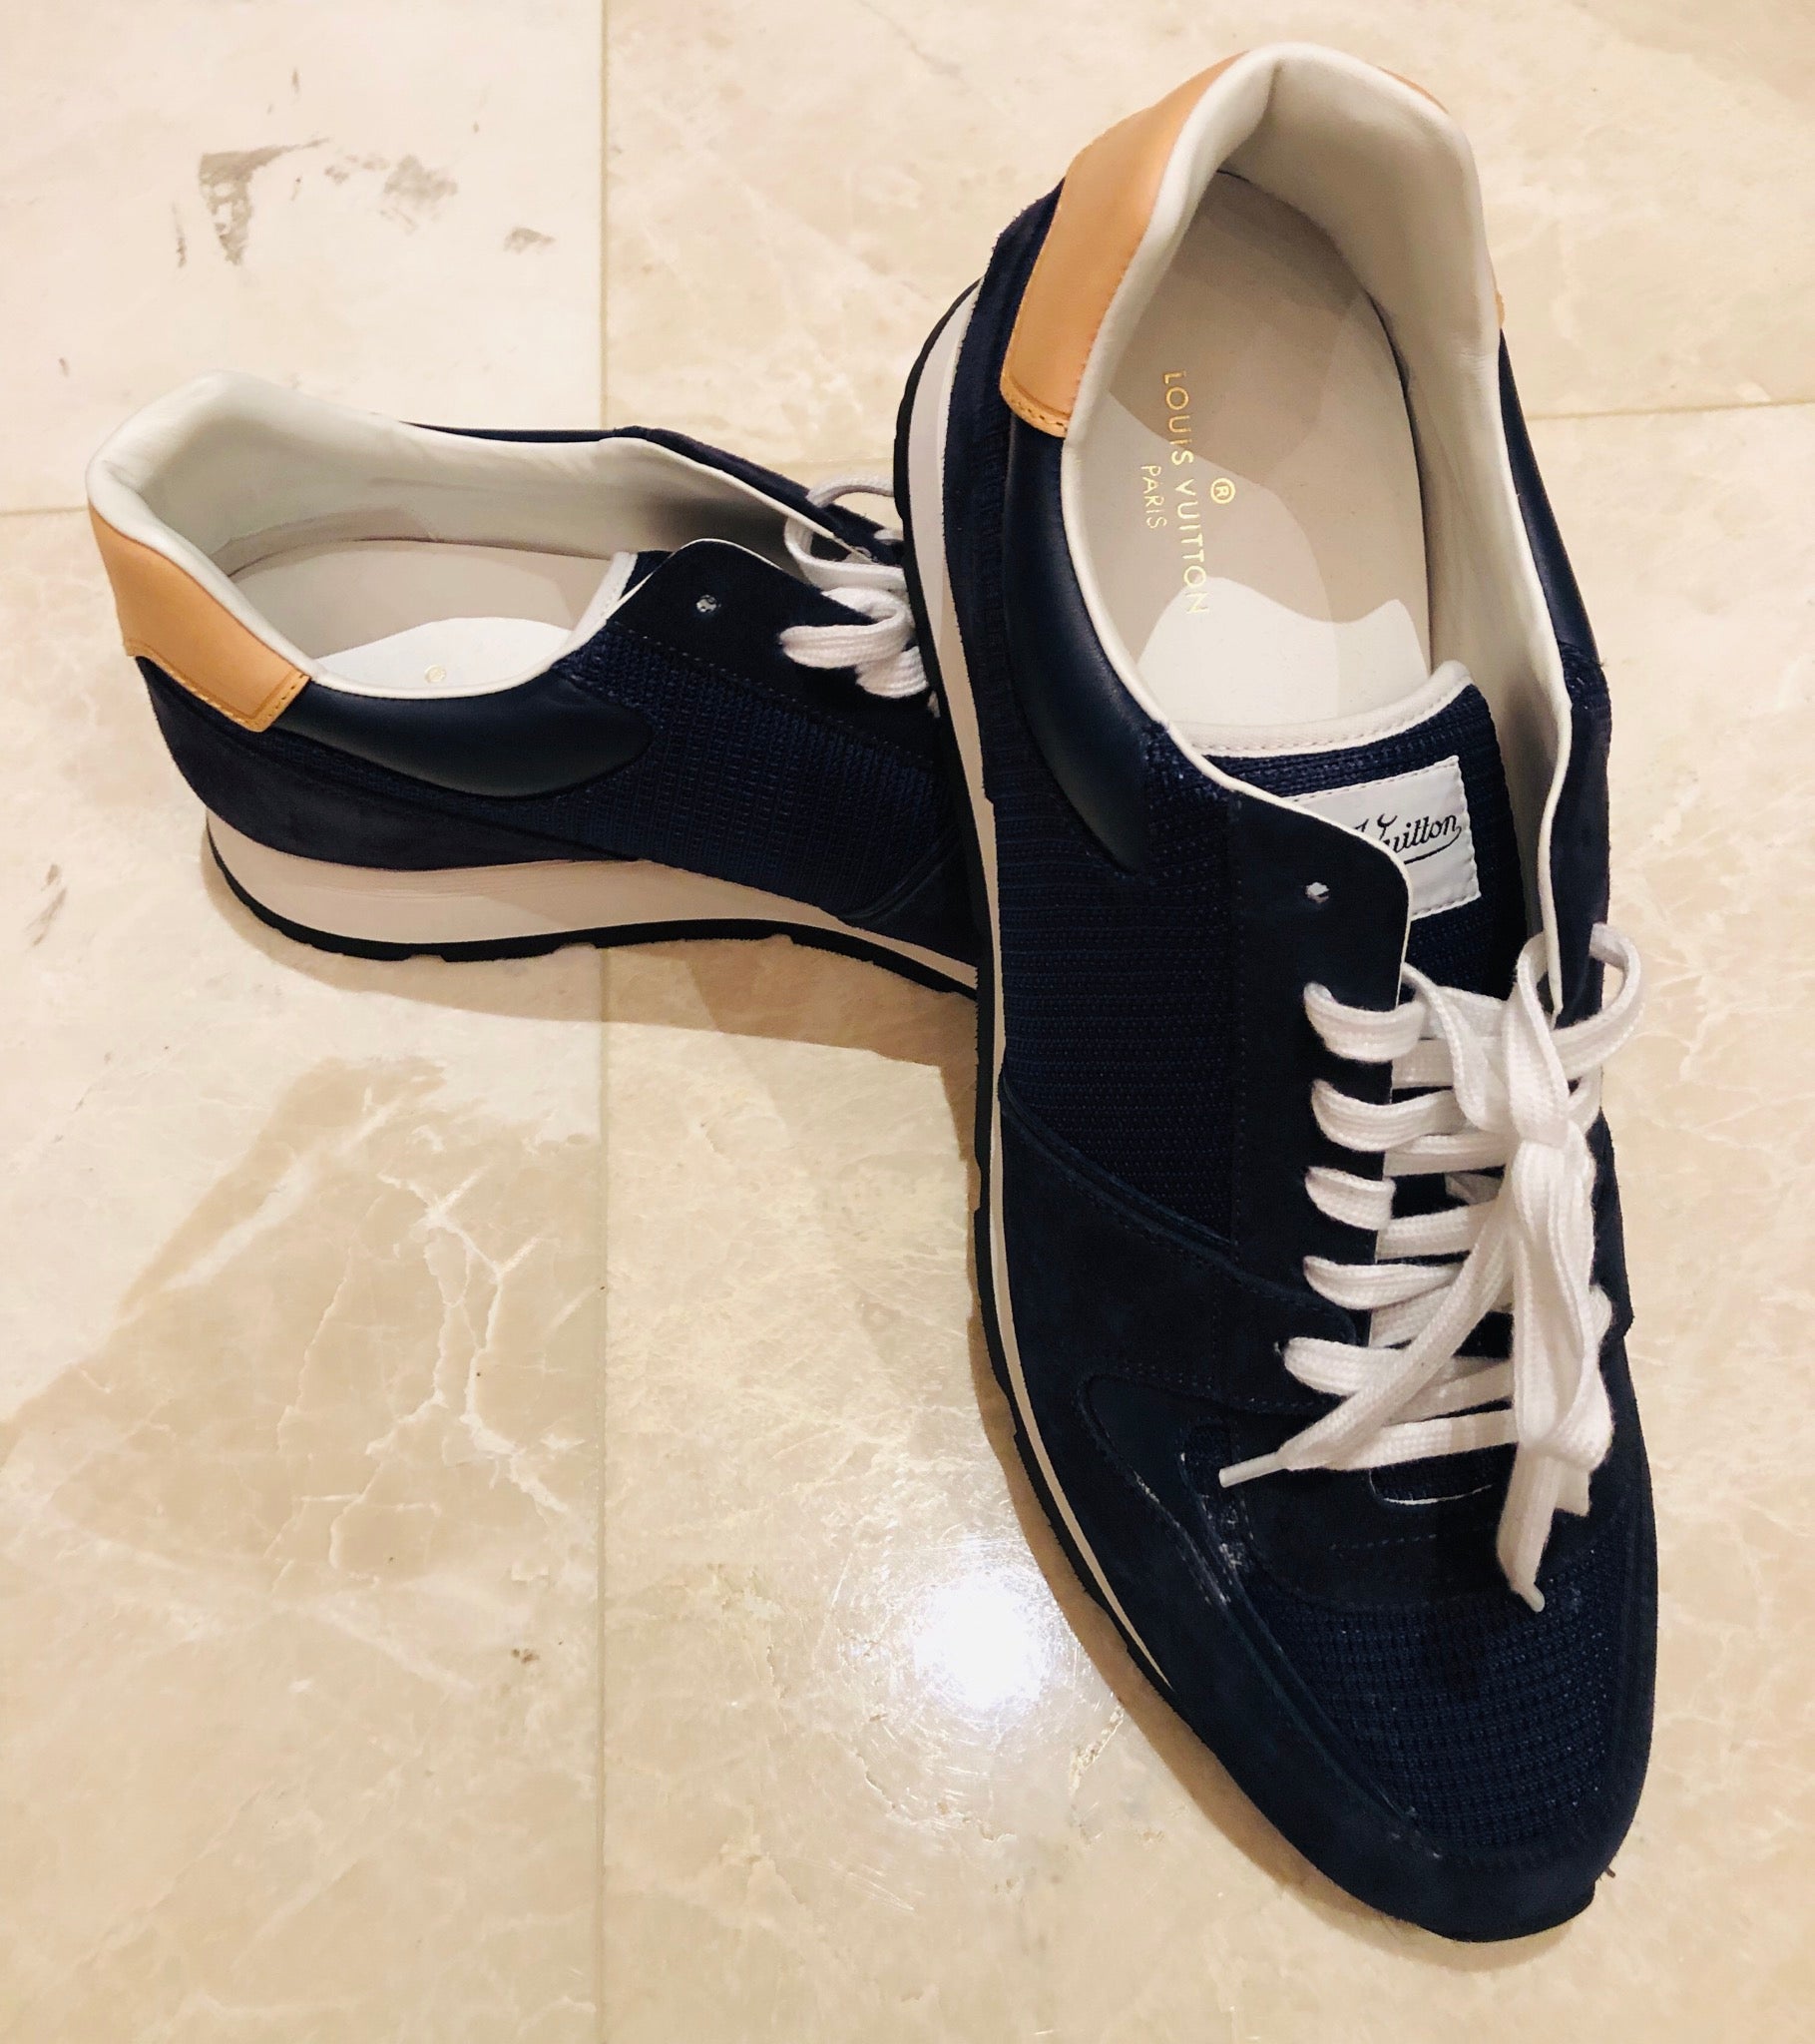 Louis Vuitton Mesh Suede Blue Sneakers Sz 12